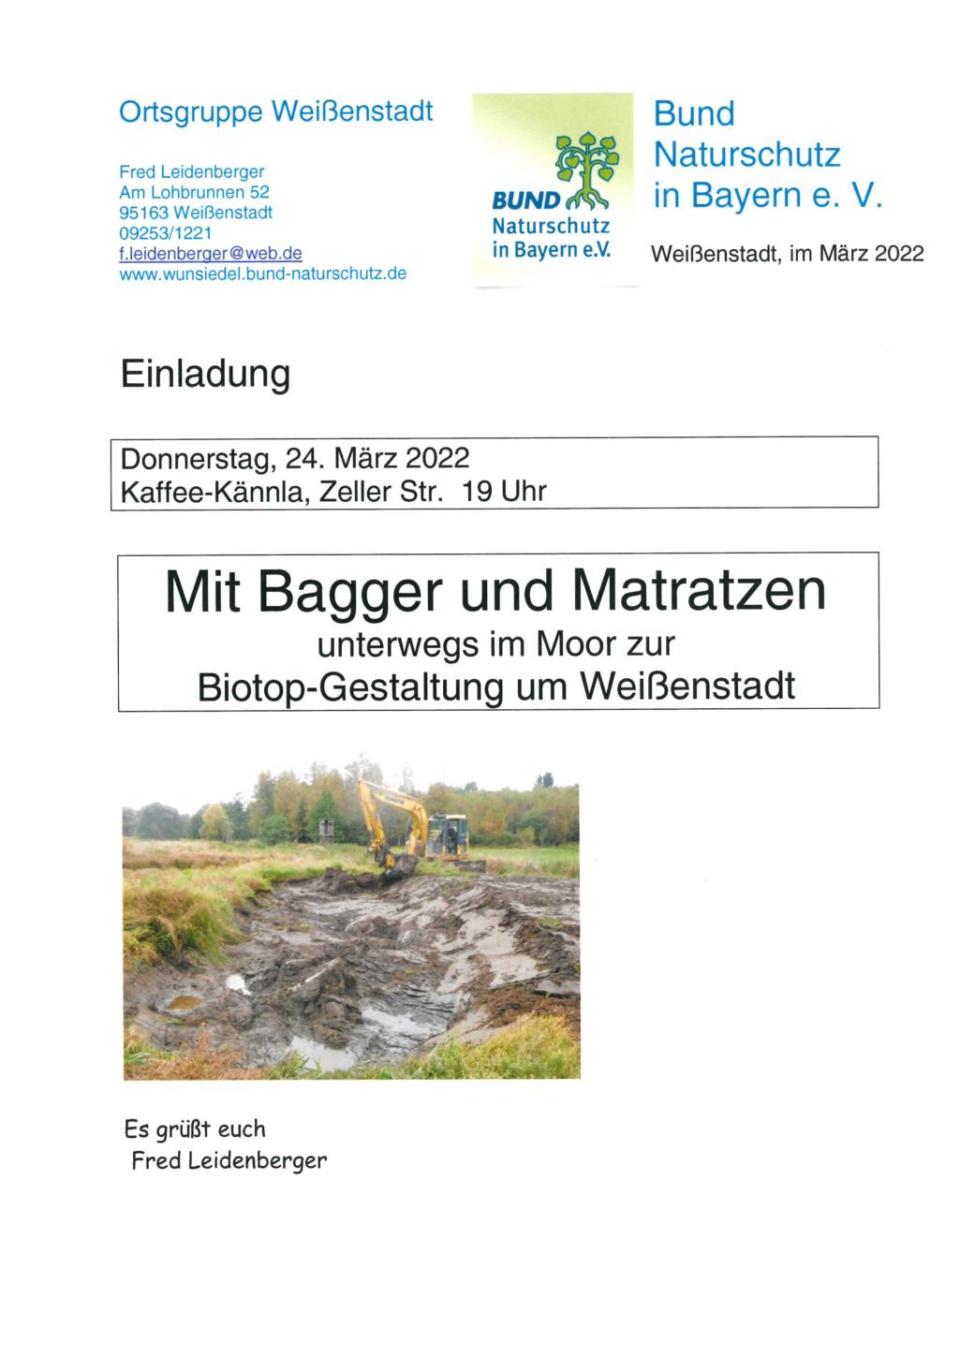 Mit Bagger und Matratzen unterwegs im Moor zur Biotop-Gestaltung um Weißenstadt